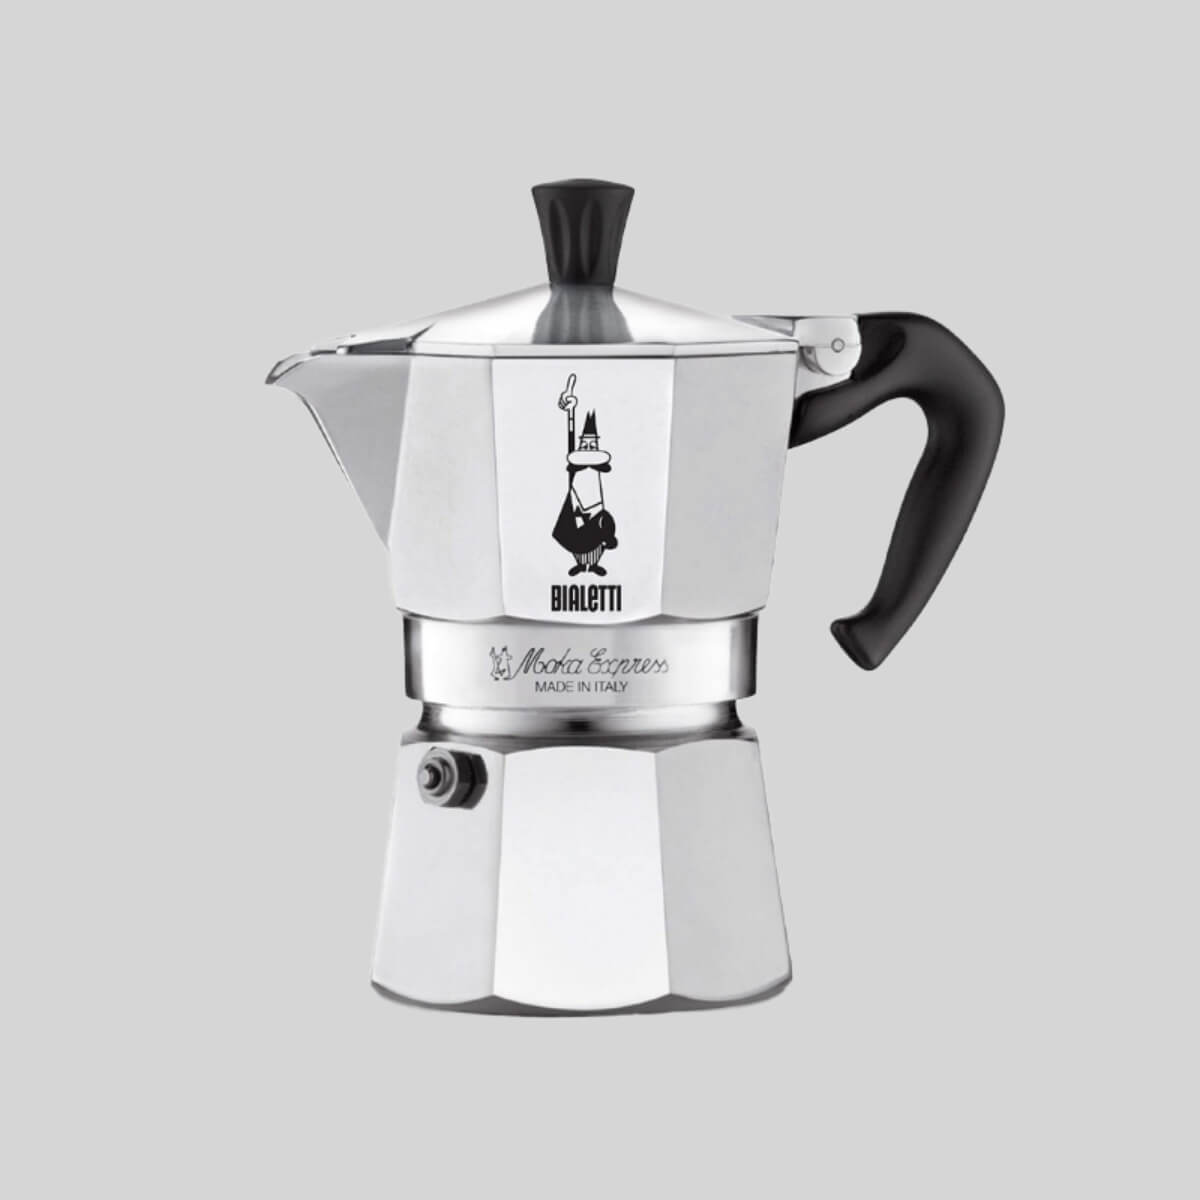 Bialetti-Moka-Express-3-Cup_RAW-Coffee-Company